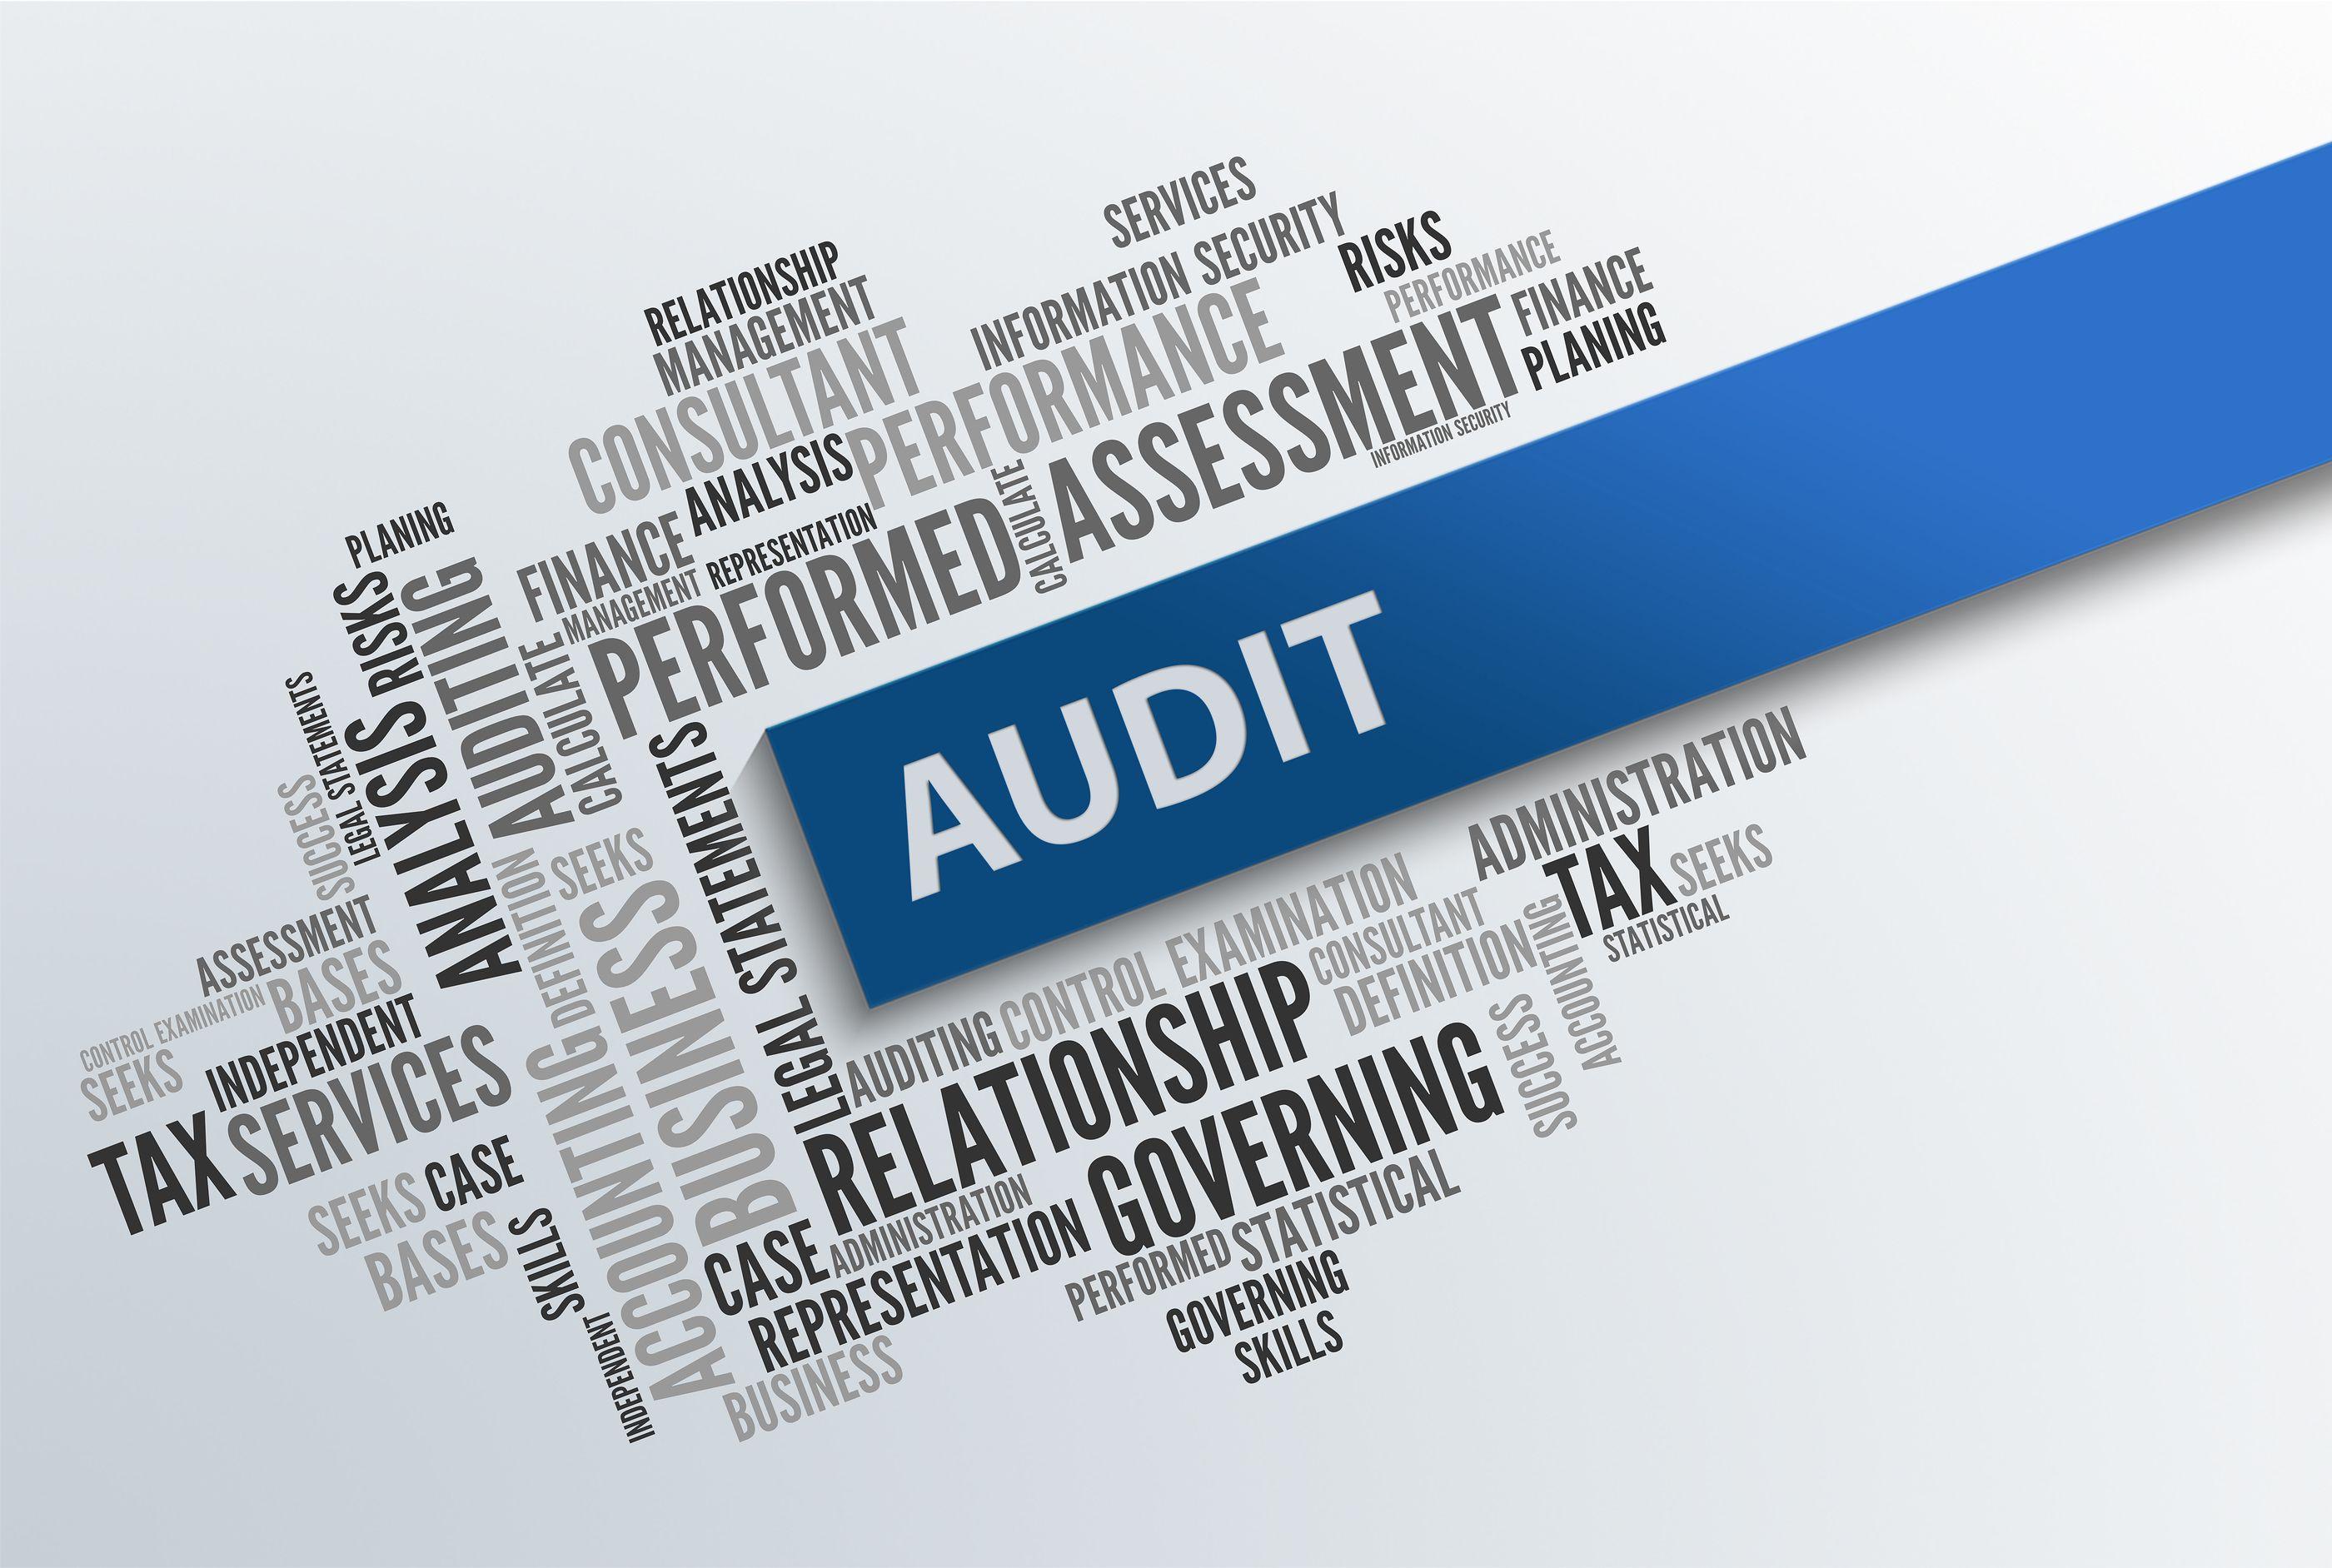 Audit Logo - JMS Advisory Group - Audit Defense